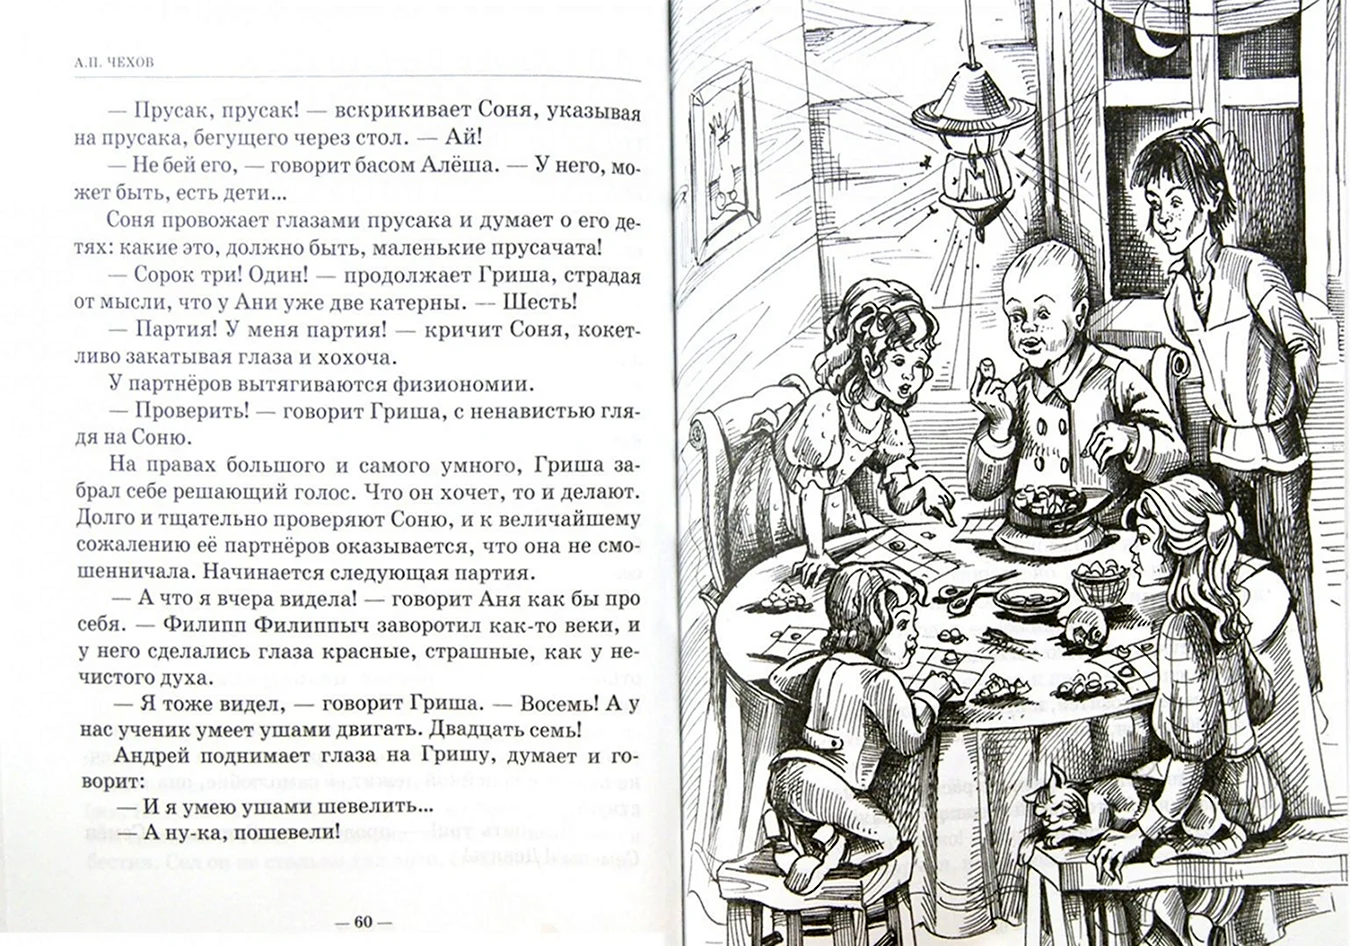 Иллюстрации к рассказу Чехова детвора. Для срисовки